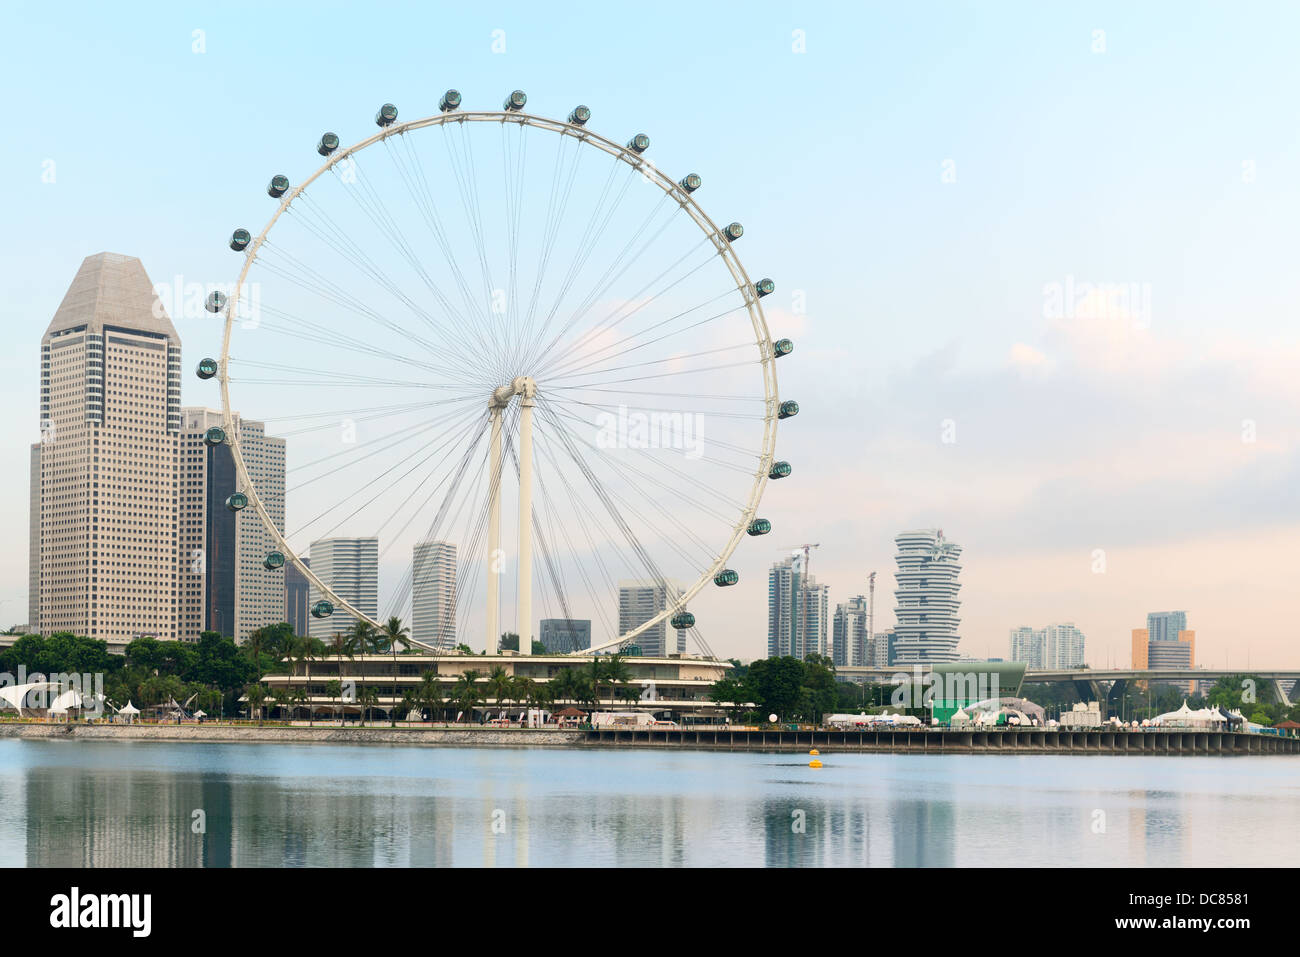 Singapore Flyer - la plus grande grande roue du monde Banque D'Images